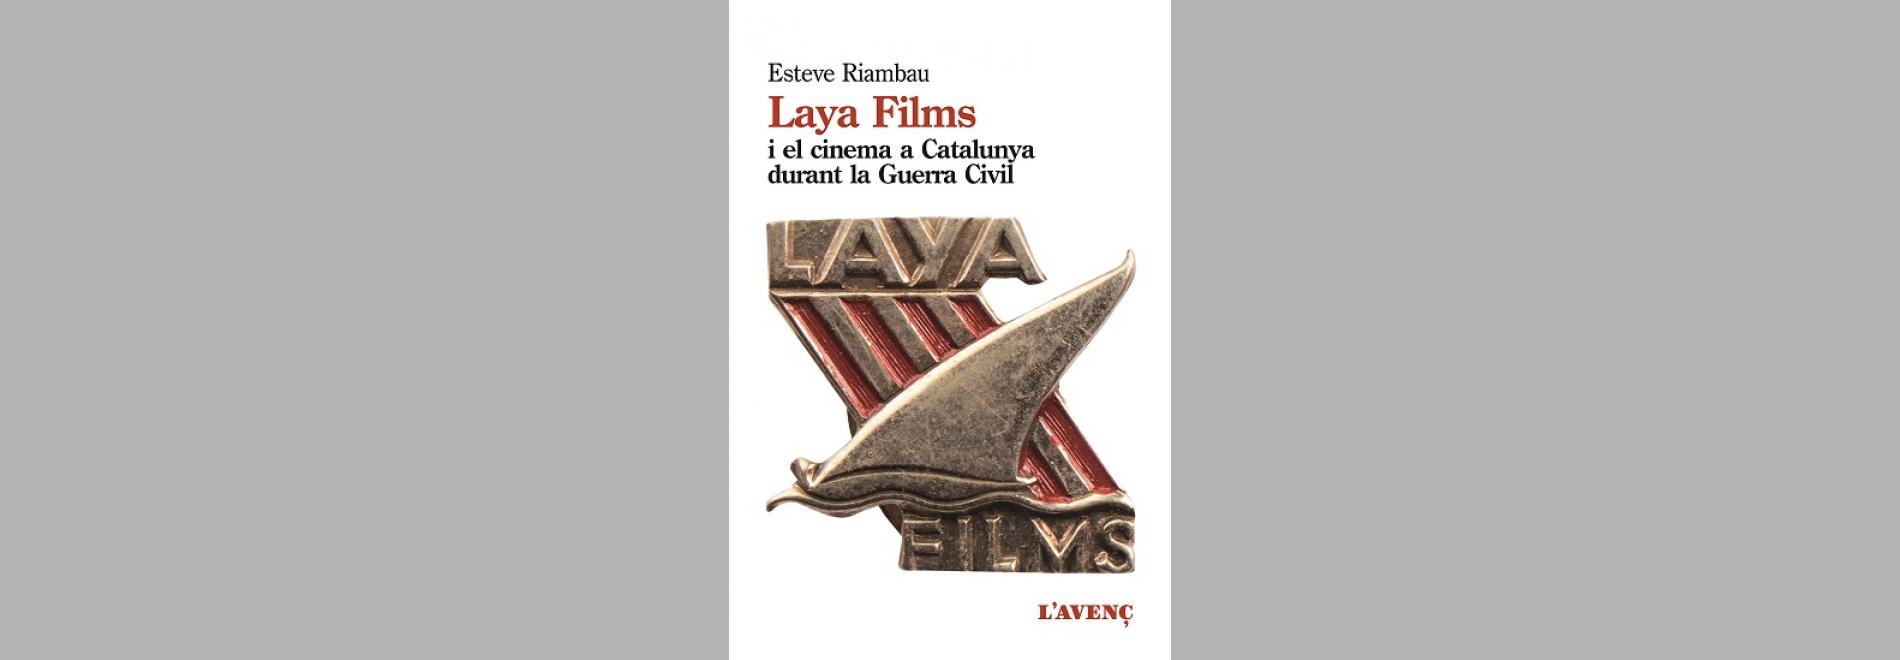 Coberta del llibre ‘Laya Films i el cinema a Catalunya durant la Guerra Civil’